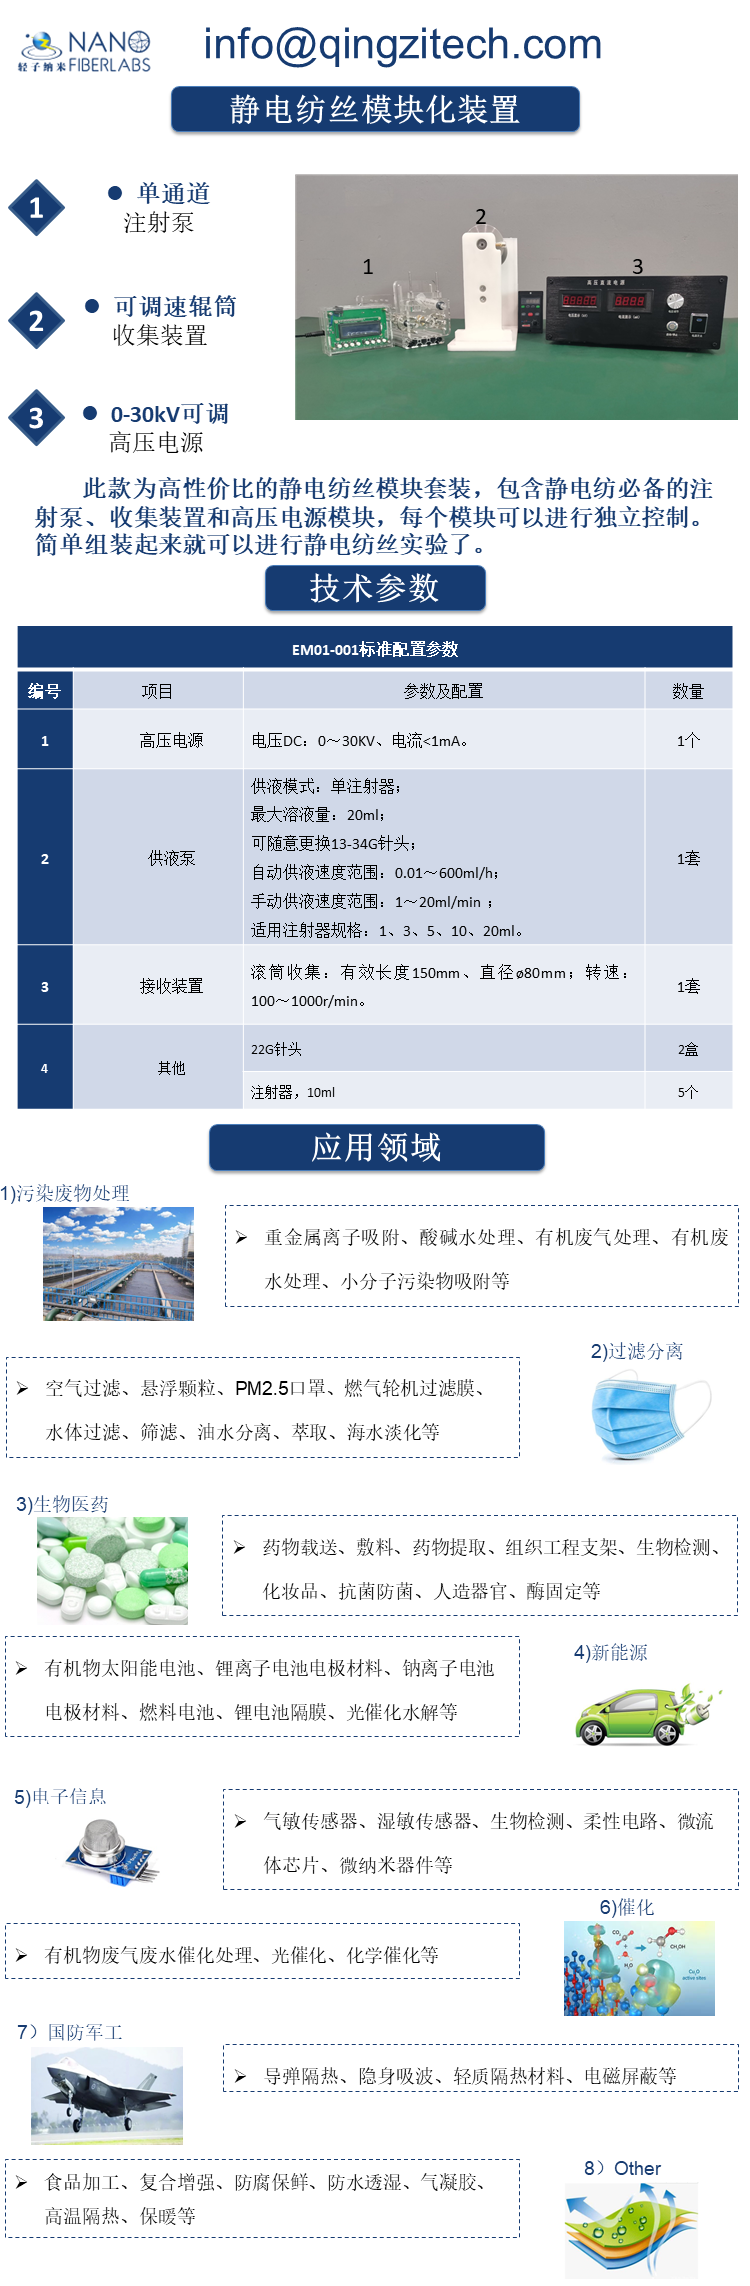 静电纺丝模块化装置0713-1(中文).png